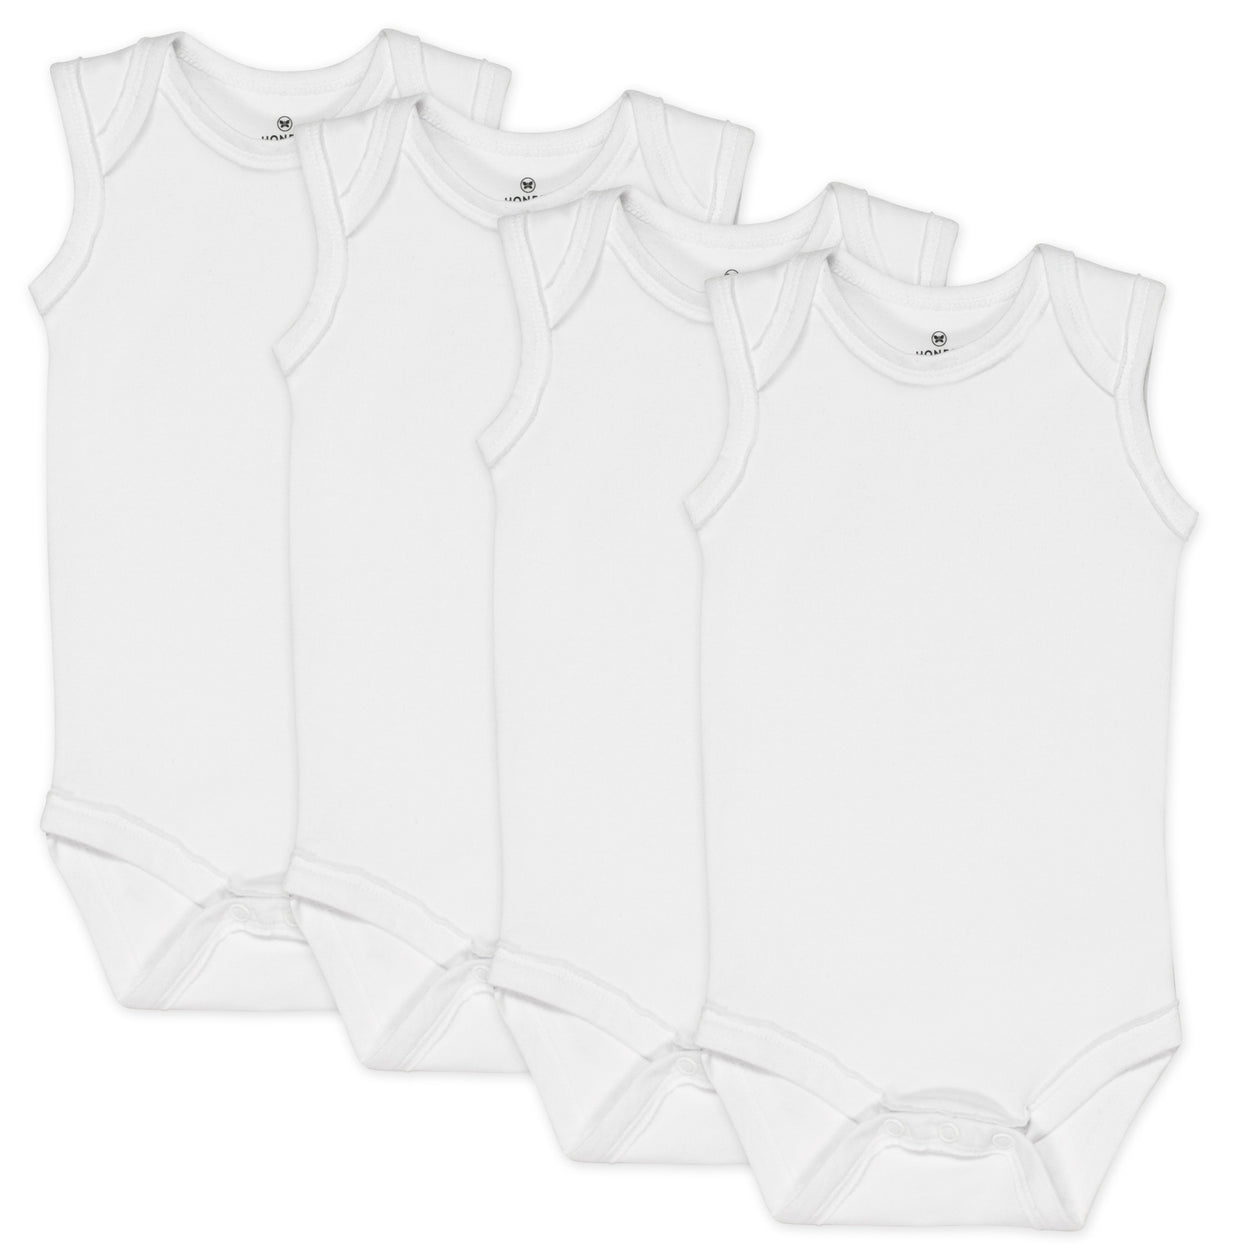 White Sleeveless Bodysuits for Women